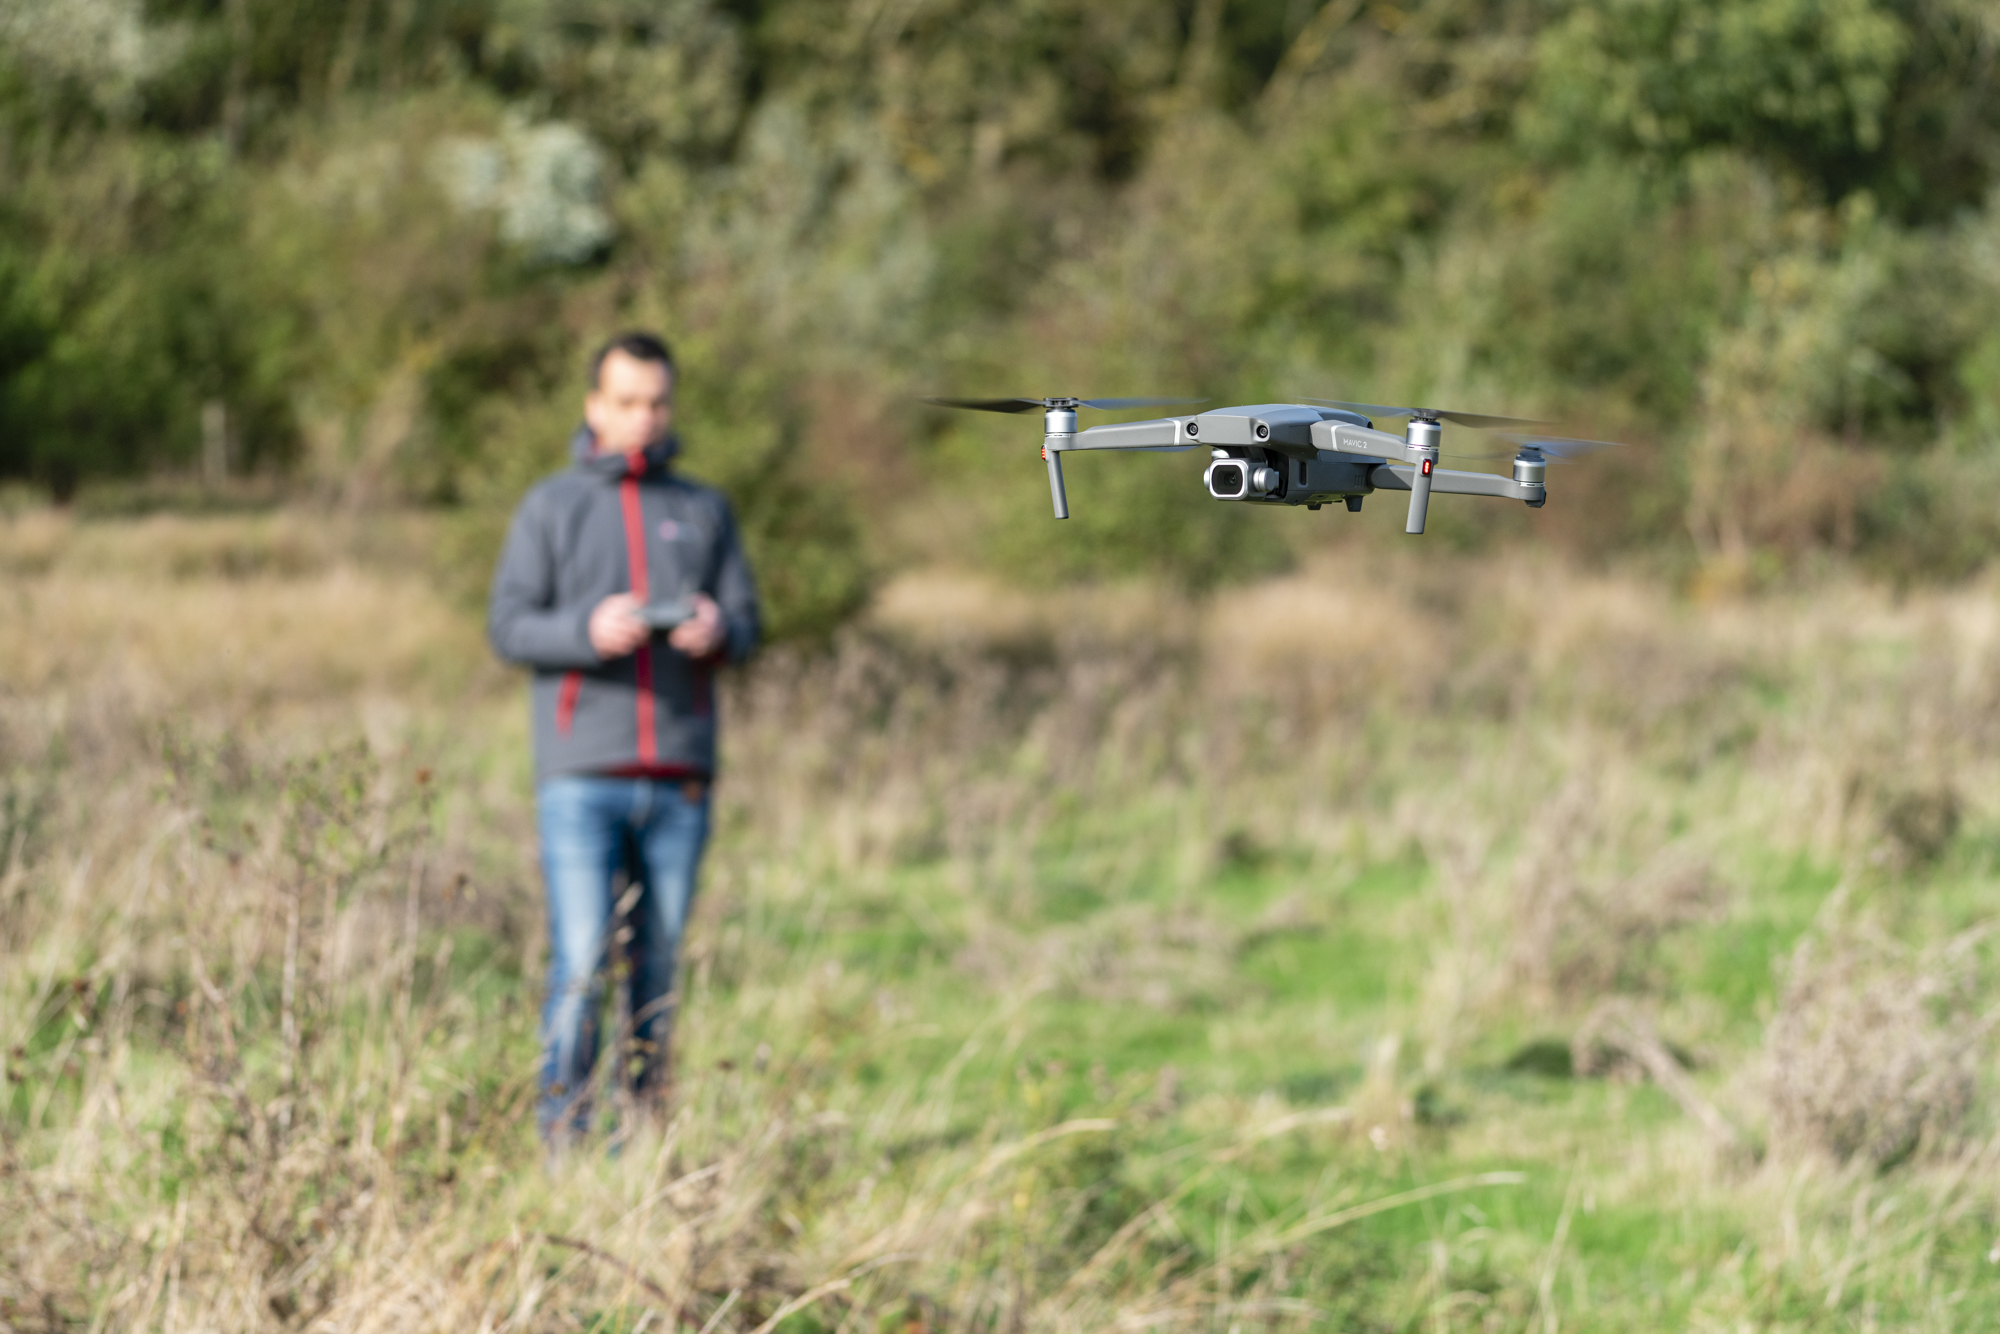 A man flying a DJI drone in a field